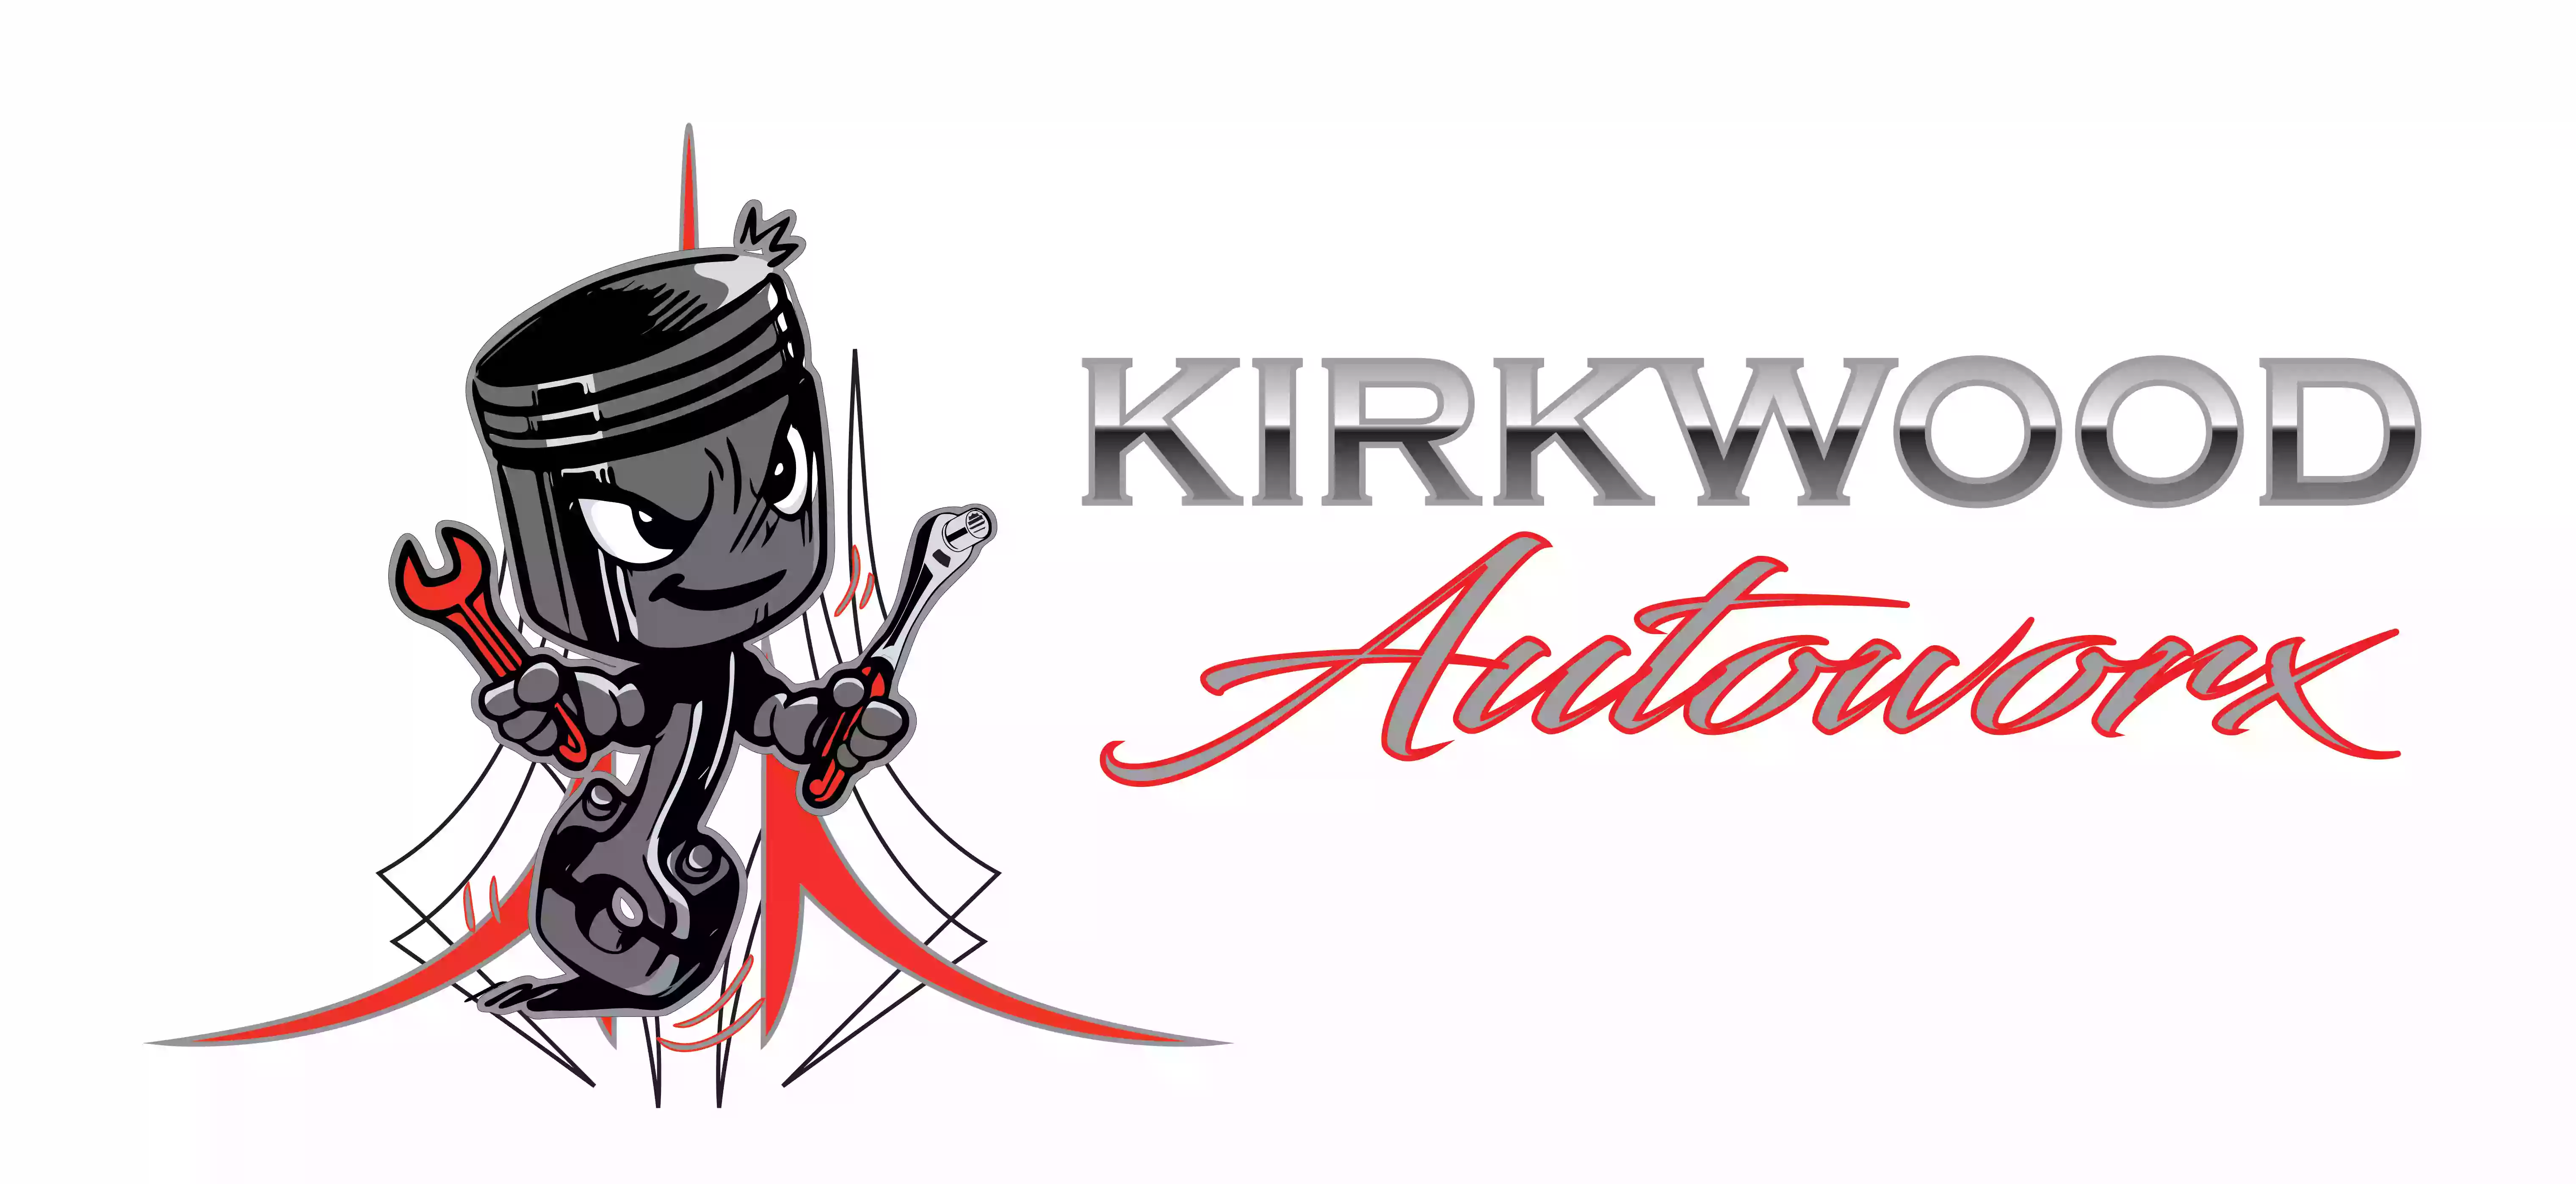 Kirkwood Autoworx